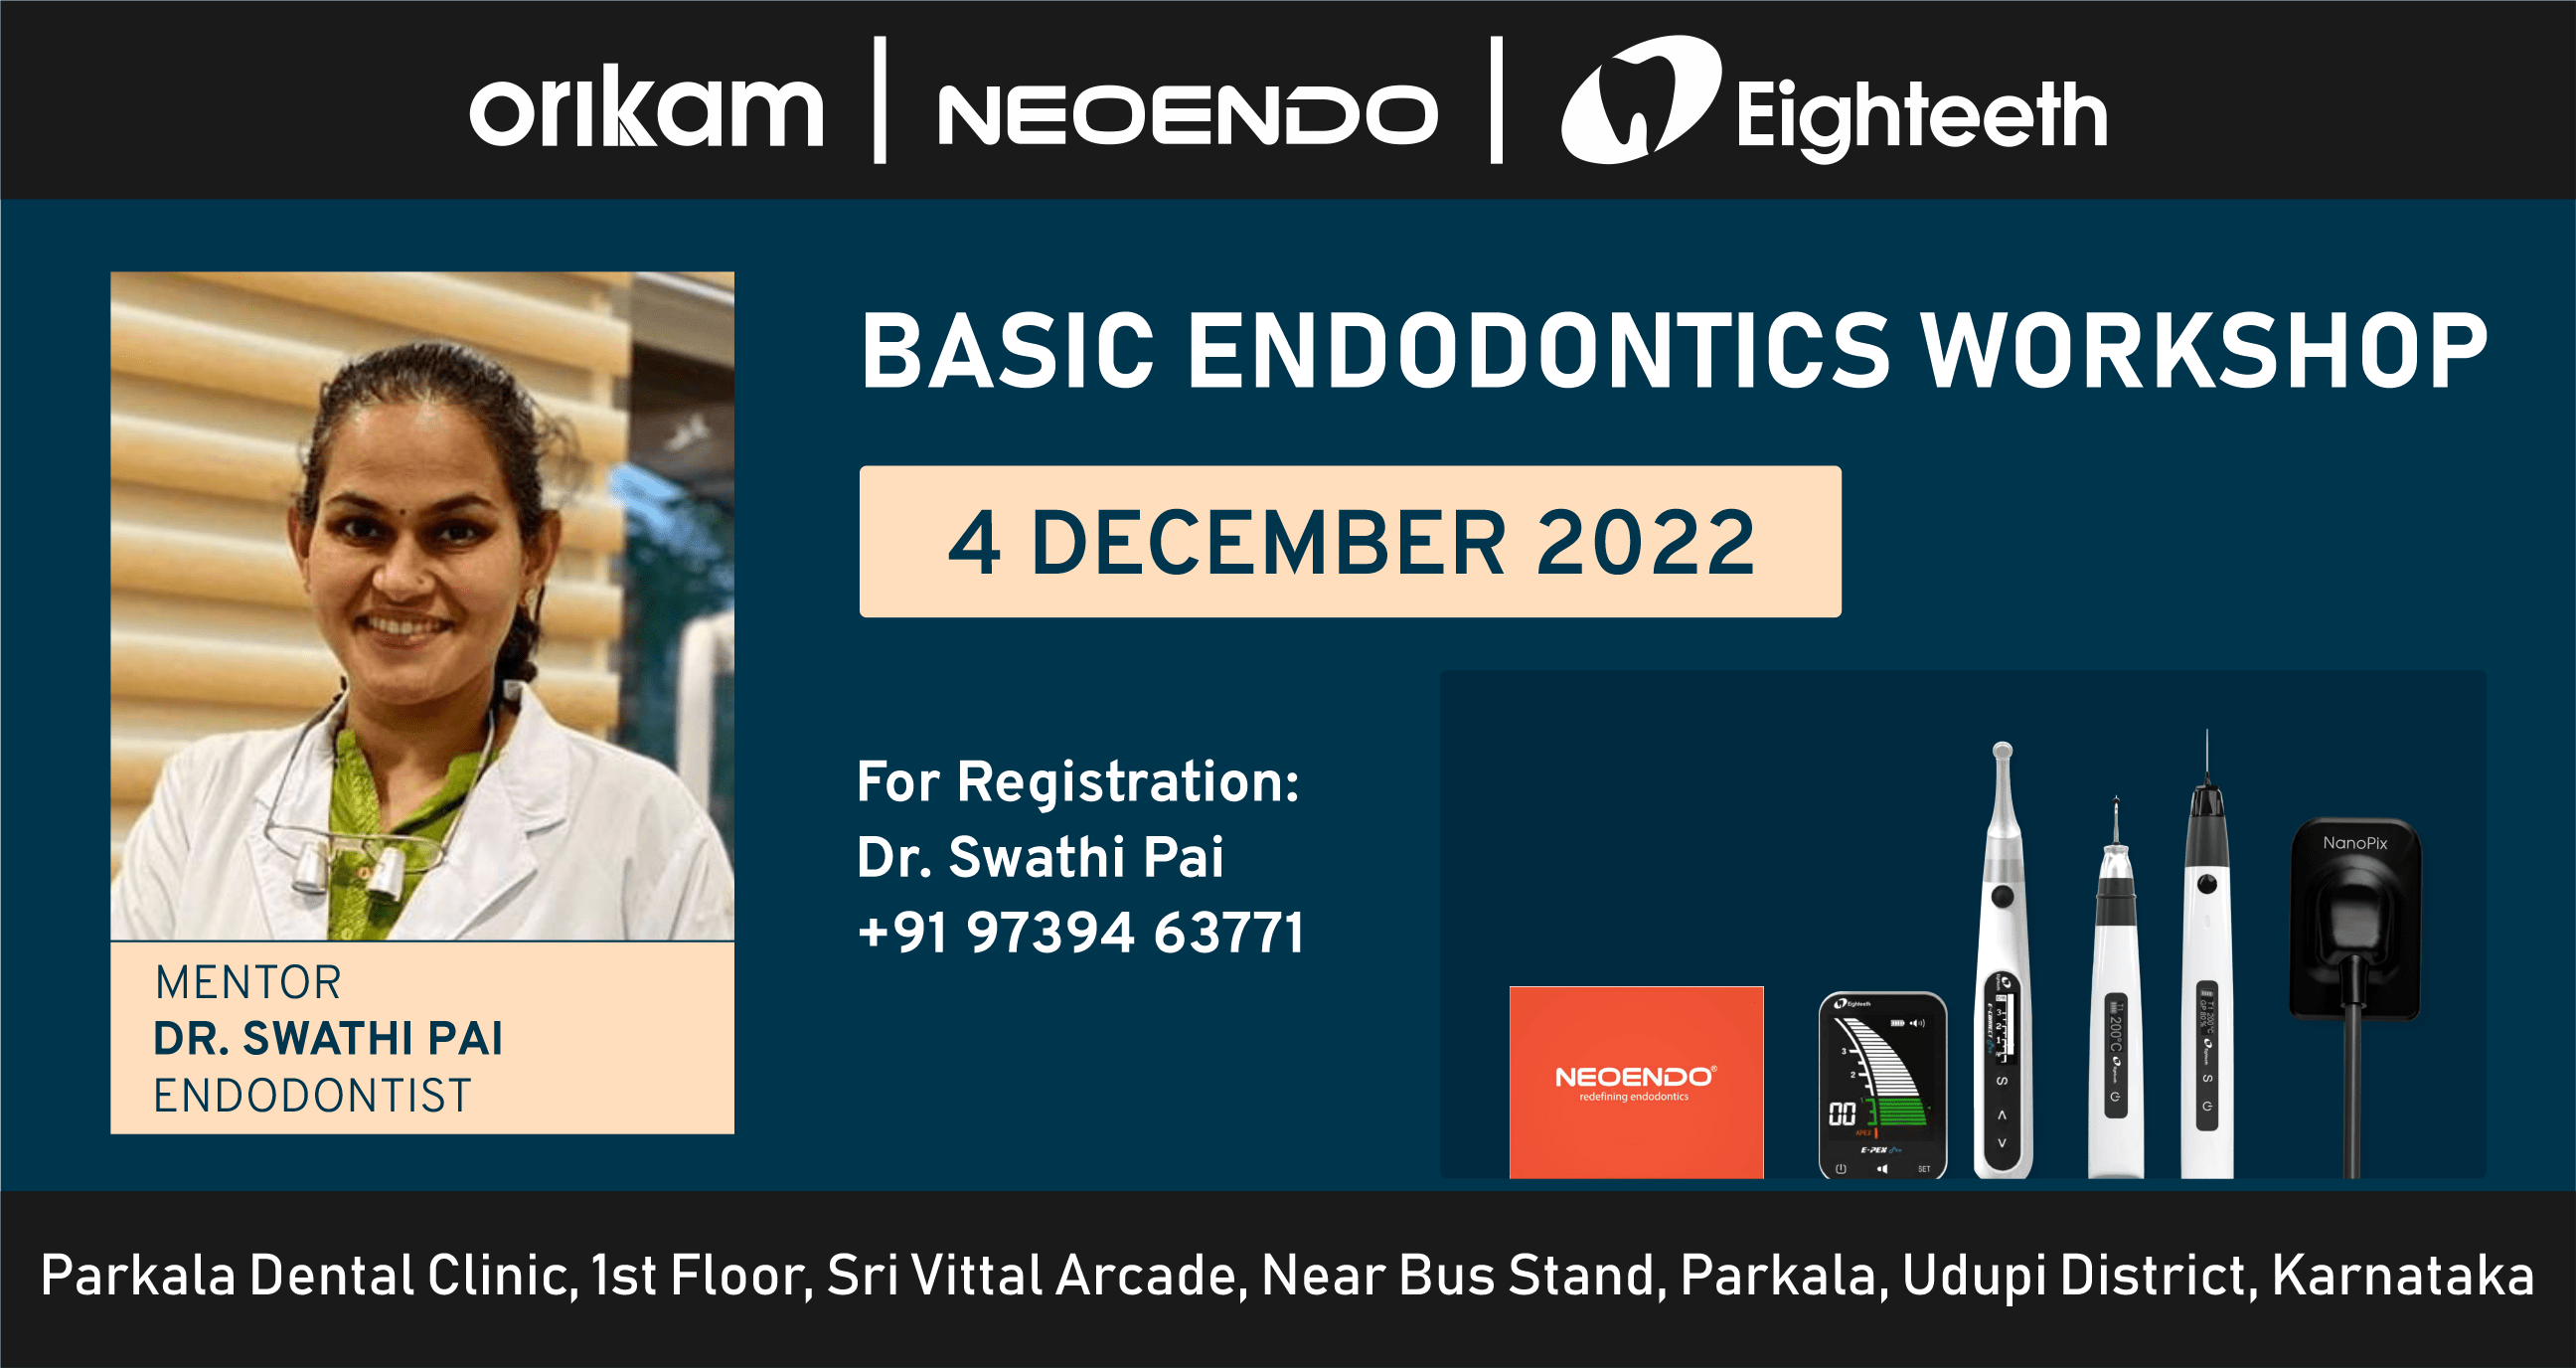 Basic Endodontics Workshop by Dr. Swathi Pai